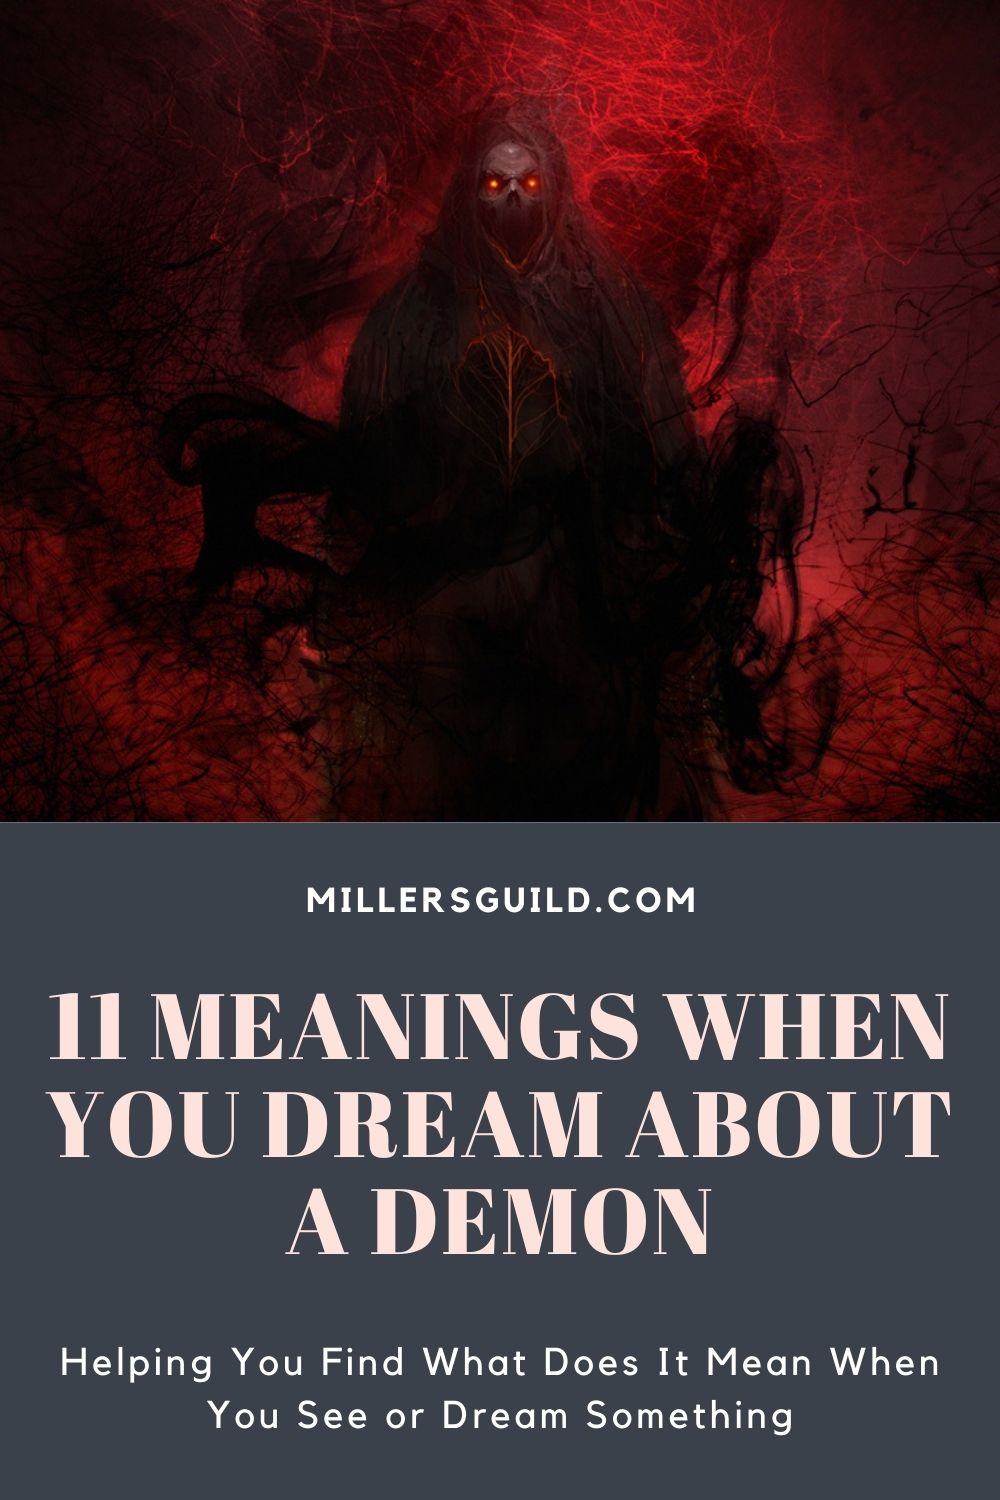 How To Interpret A Demonic Dream